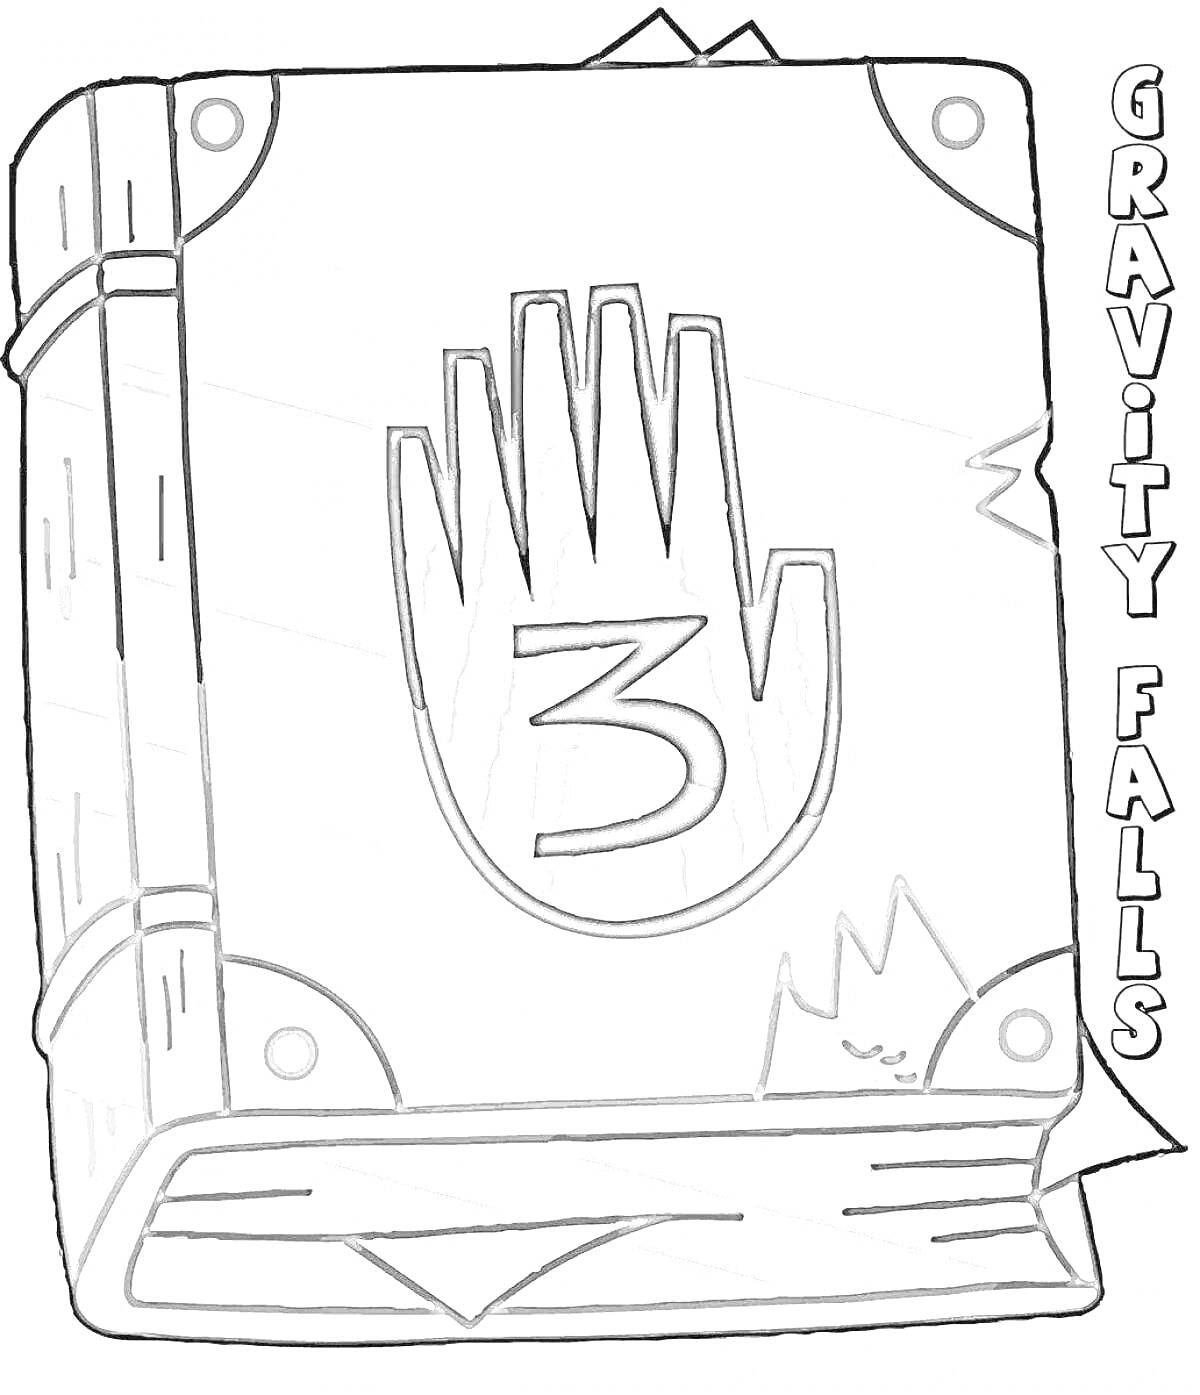 Раскраска Книга с числом 3 на обложке и надписью Gravity Falls